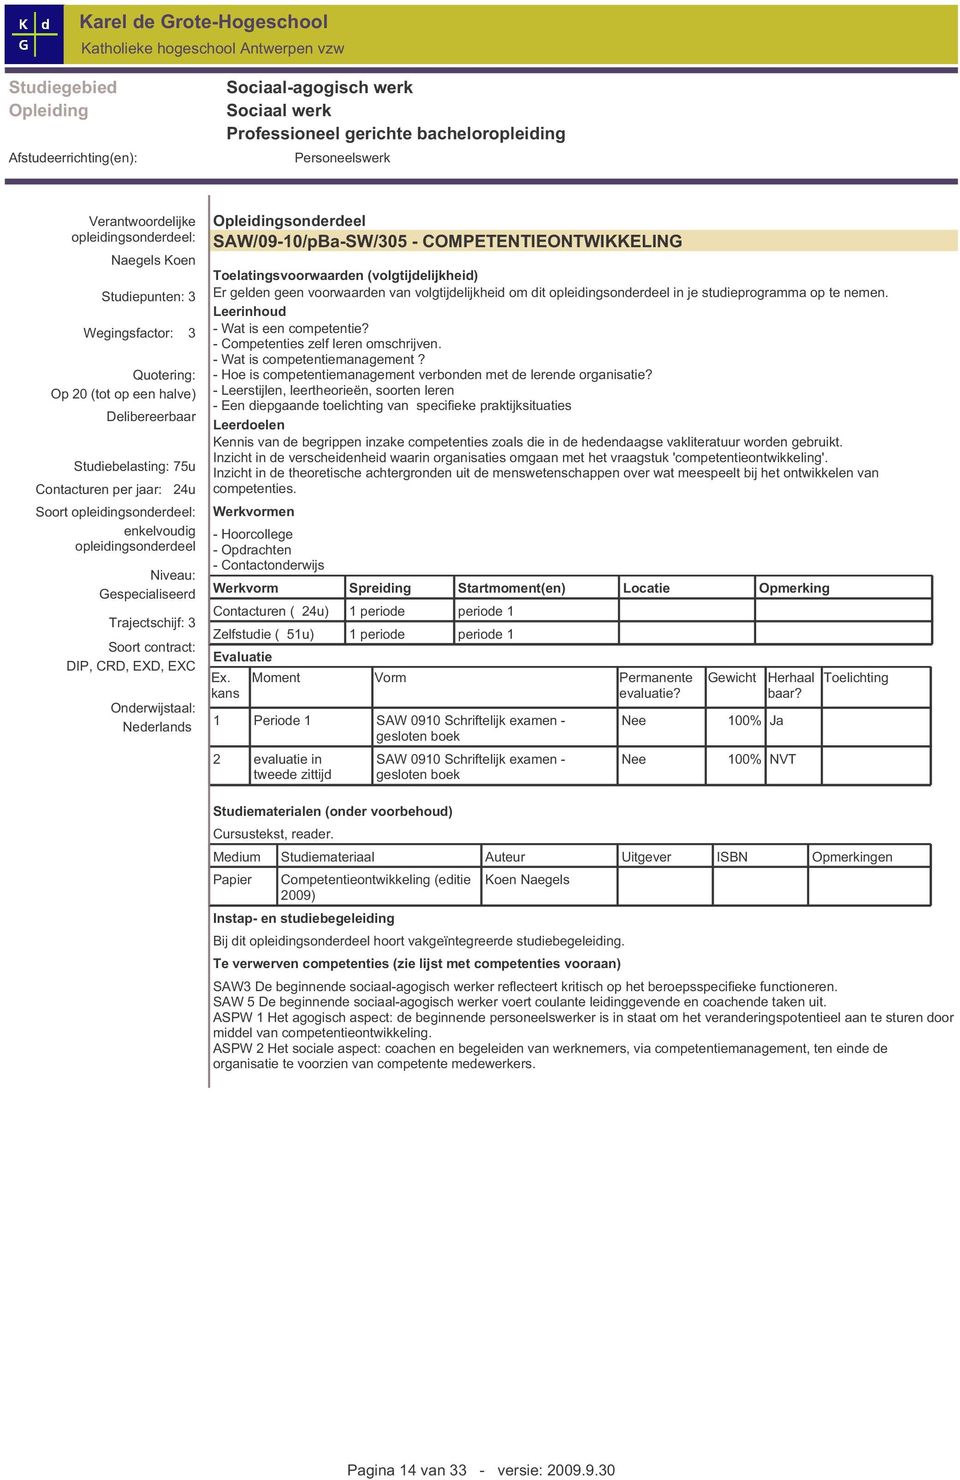 Gespecialiseerd Trajectschijf:3 Soort contract: DIP,CRD,EXD,EXC Onderwijstaal: Nederlands Opleidingsonderdeel SAW /09-10/pBa-SW /305 - COMPETENTIEONTW IKKELING Toelatingsvoorwaarden